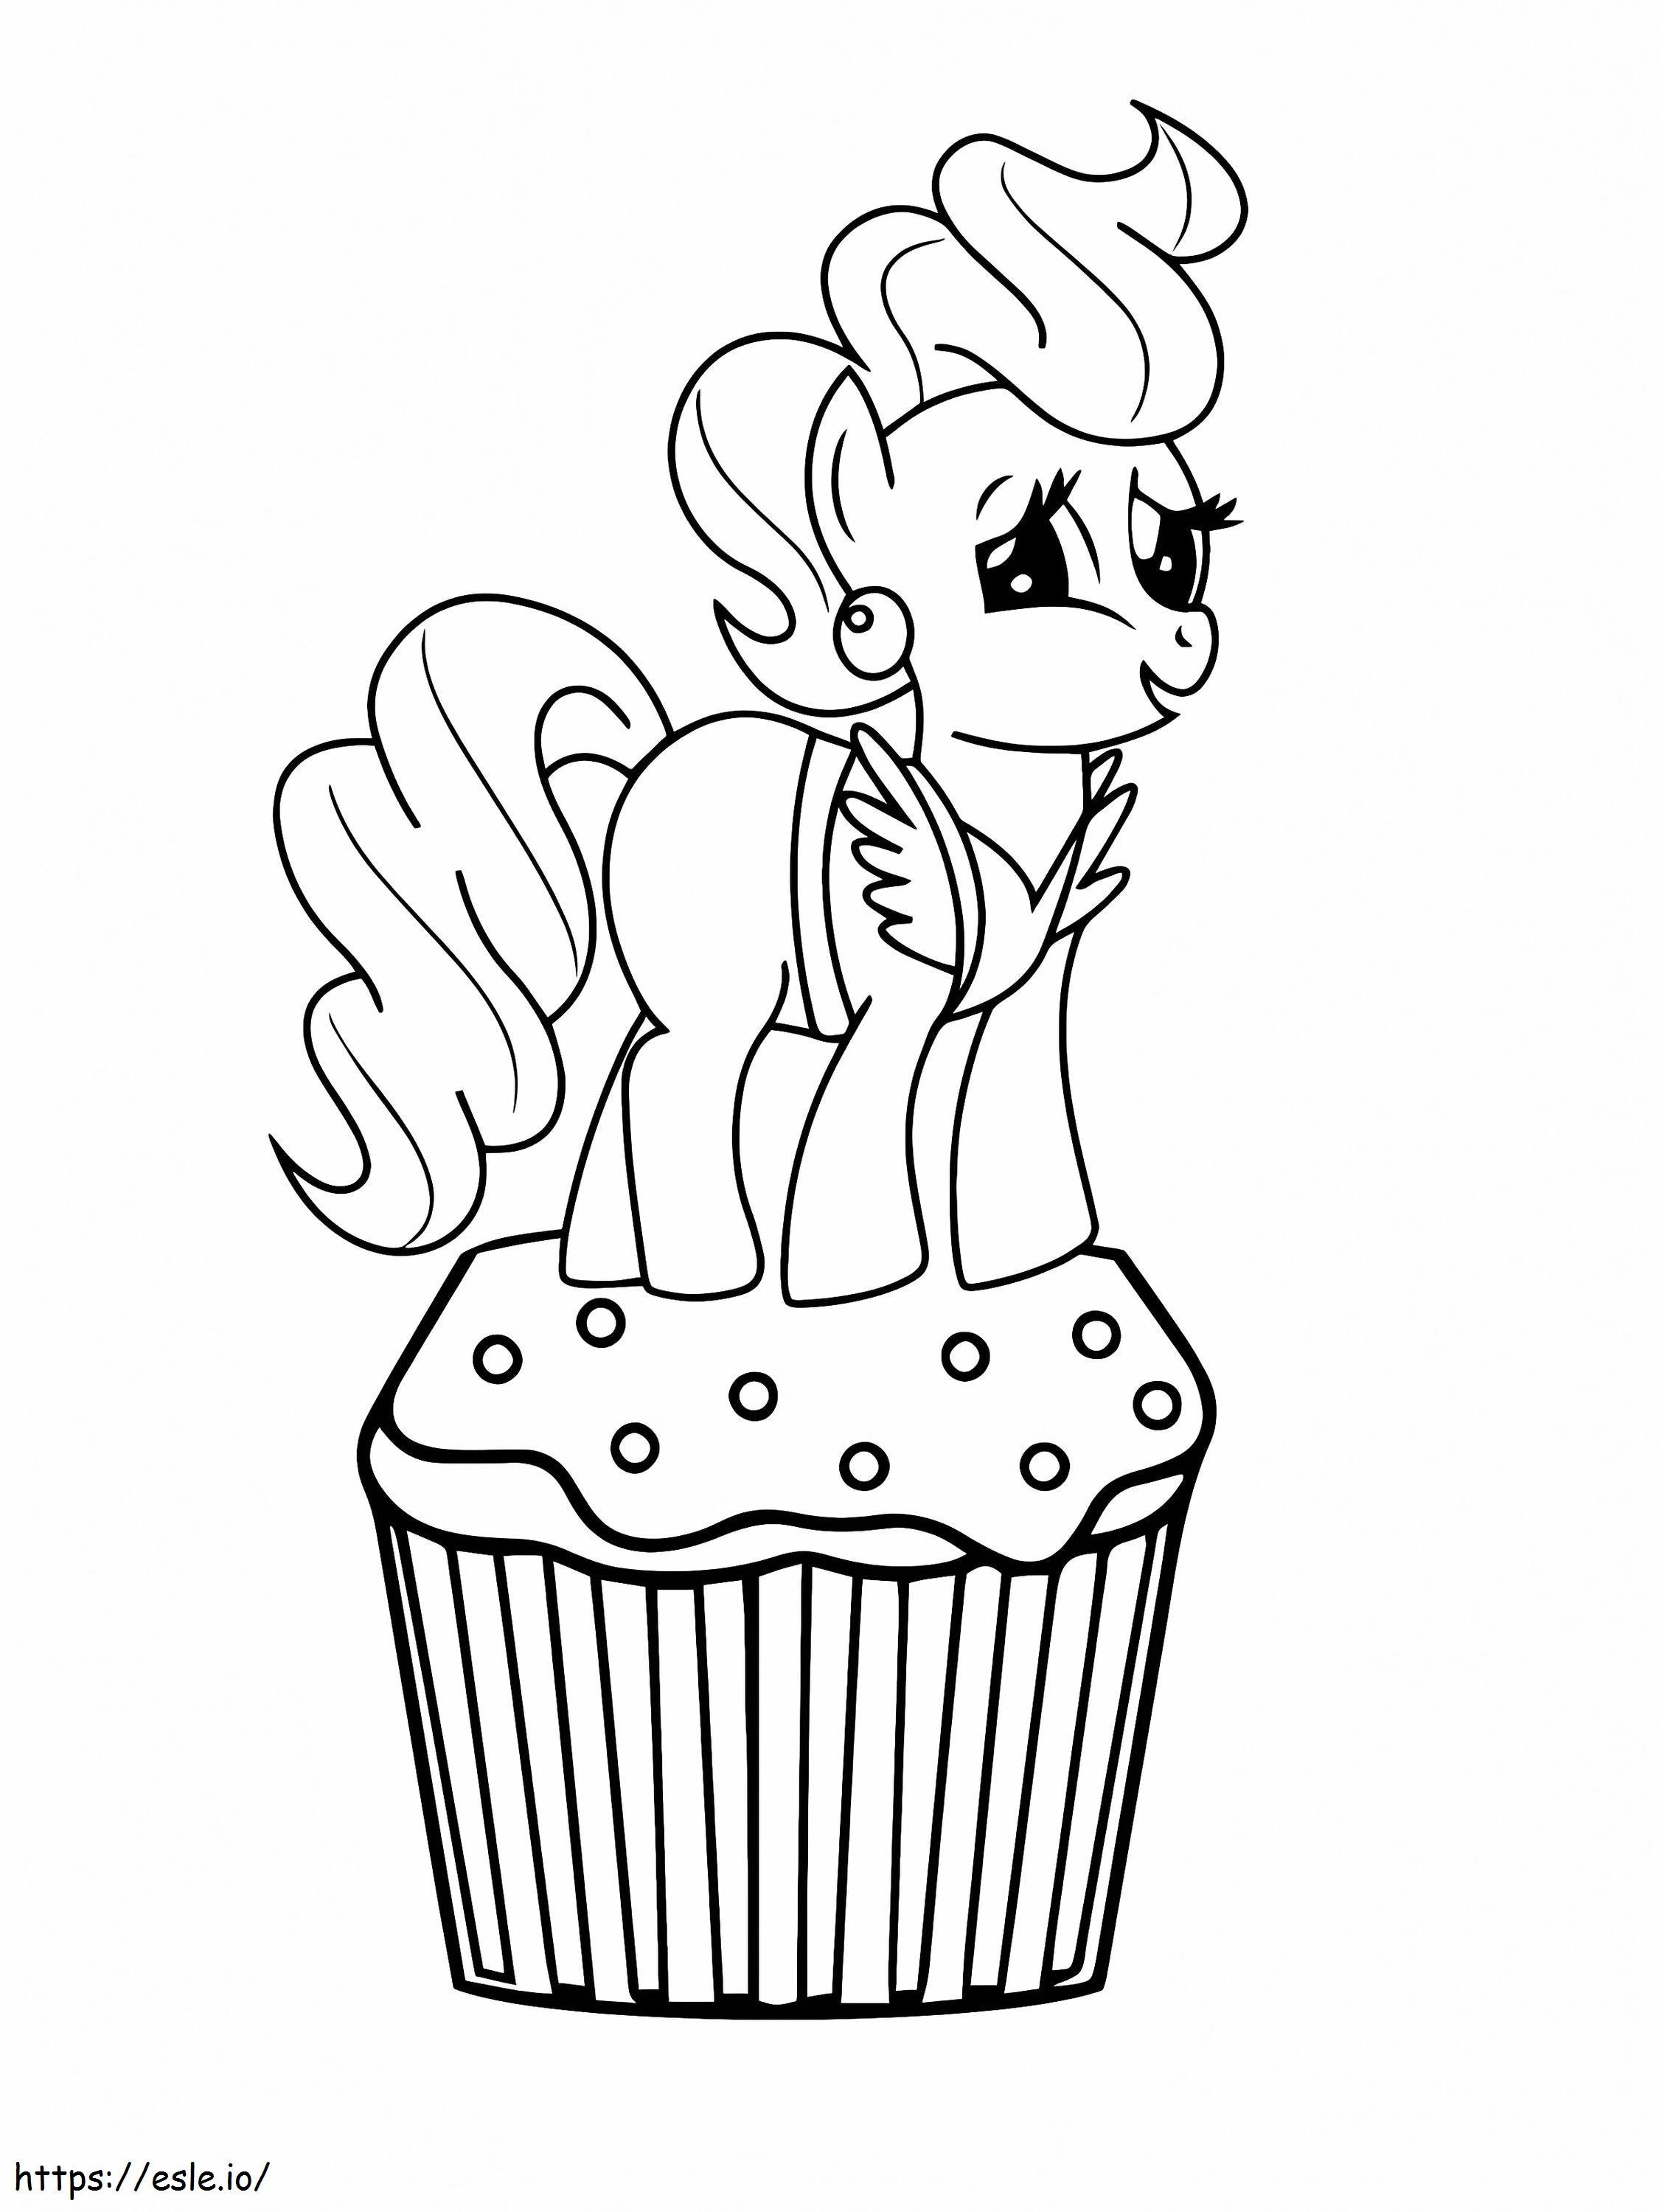 Mevrouw Cake op de bovenkant van Cupcake in My Little Pony kleurplaat kleurplaat